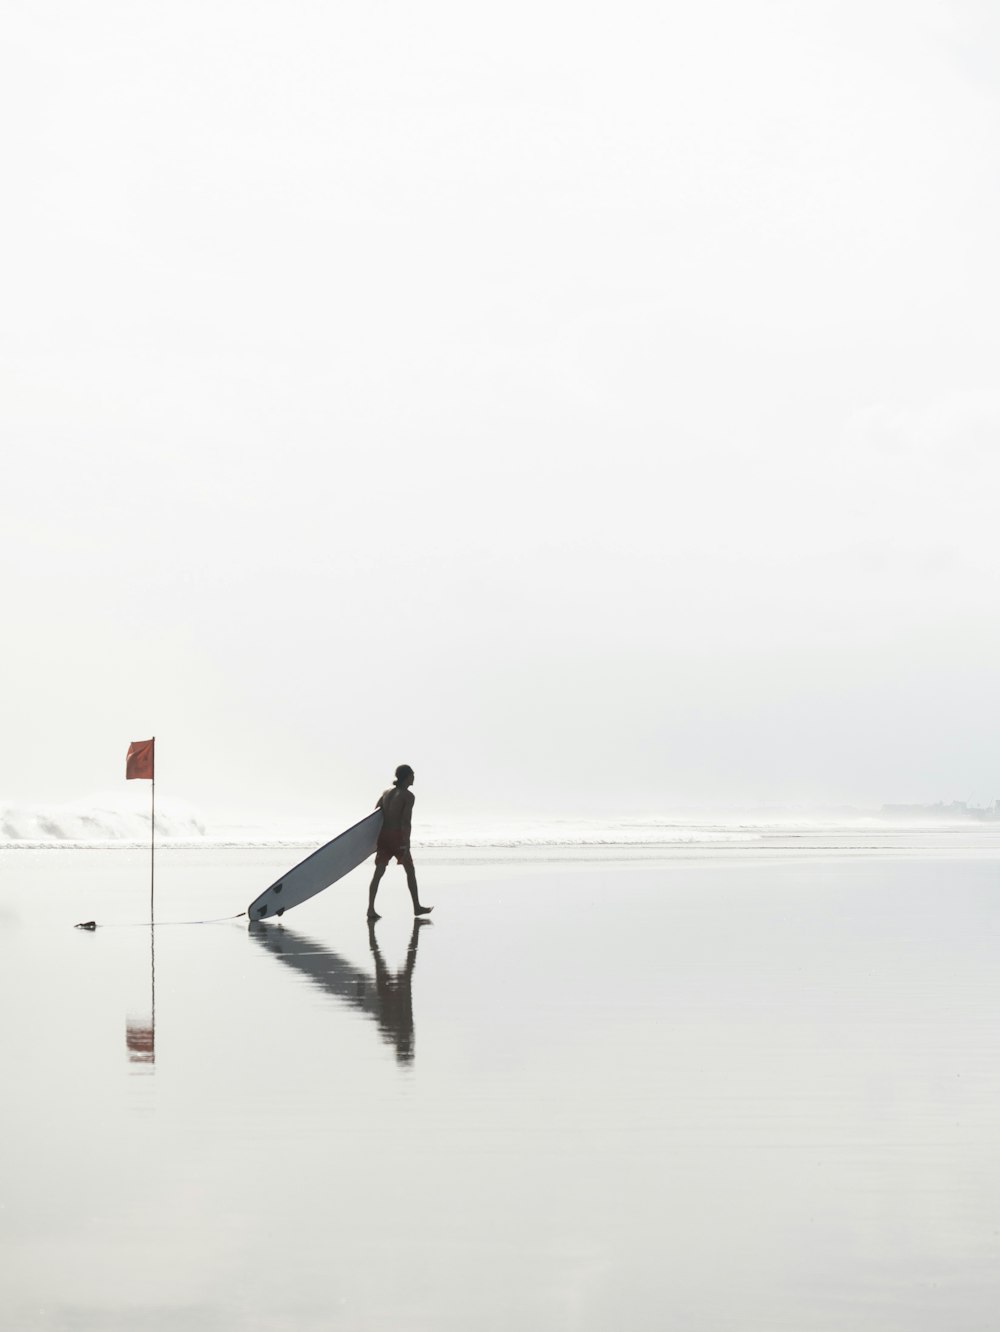 日中、旗の近くのビーチでサーフボードを引きずりながら歩く男